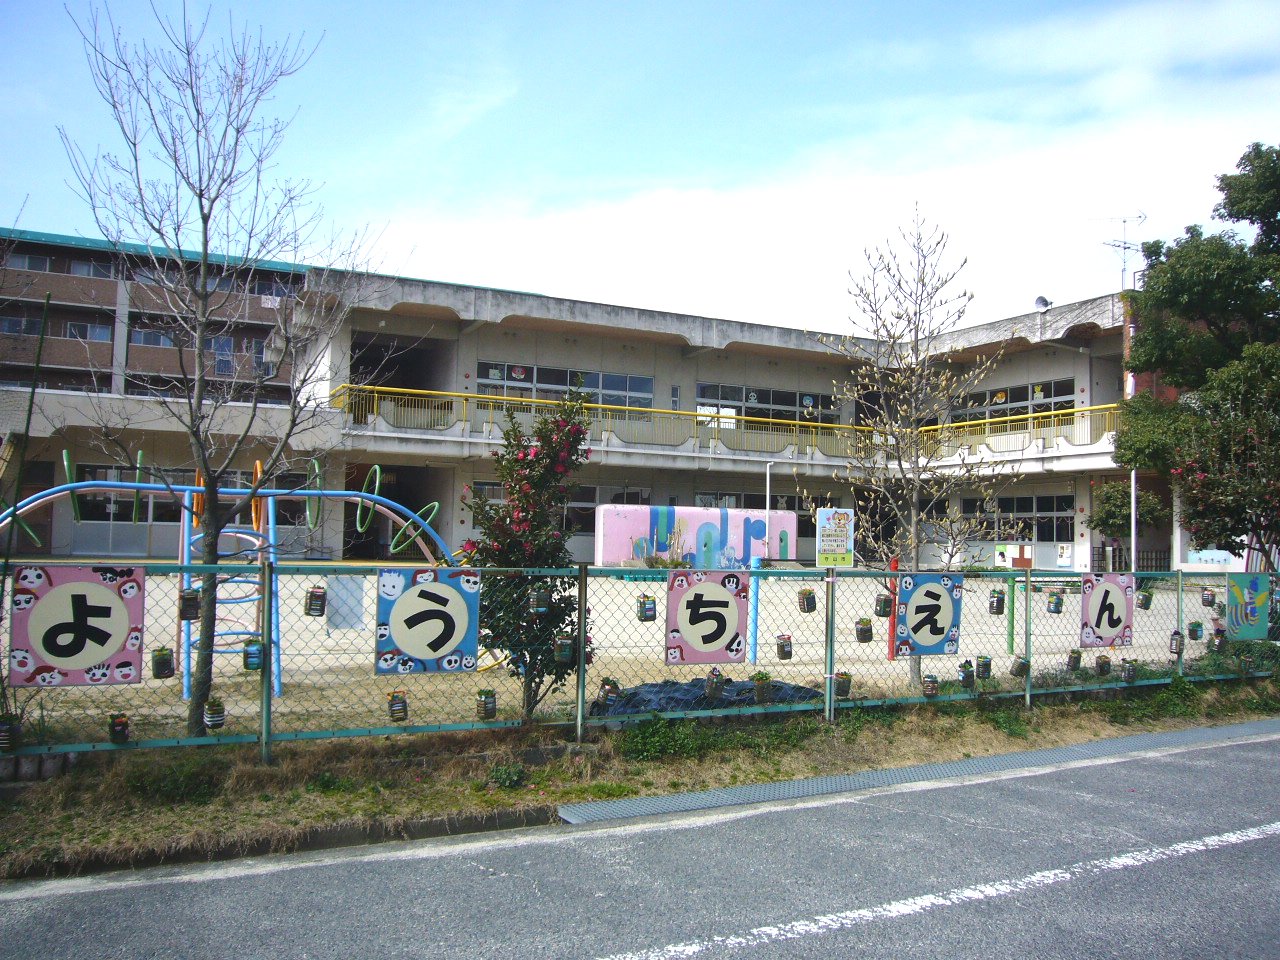 kindergarten ・ Nursery. Yoshimi kindergarten (kindergarten ・ 300m to the nursery)